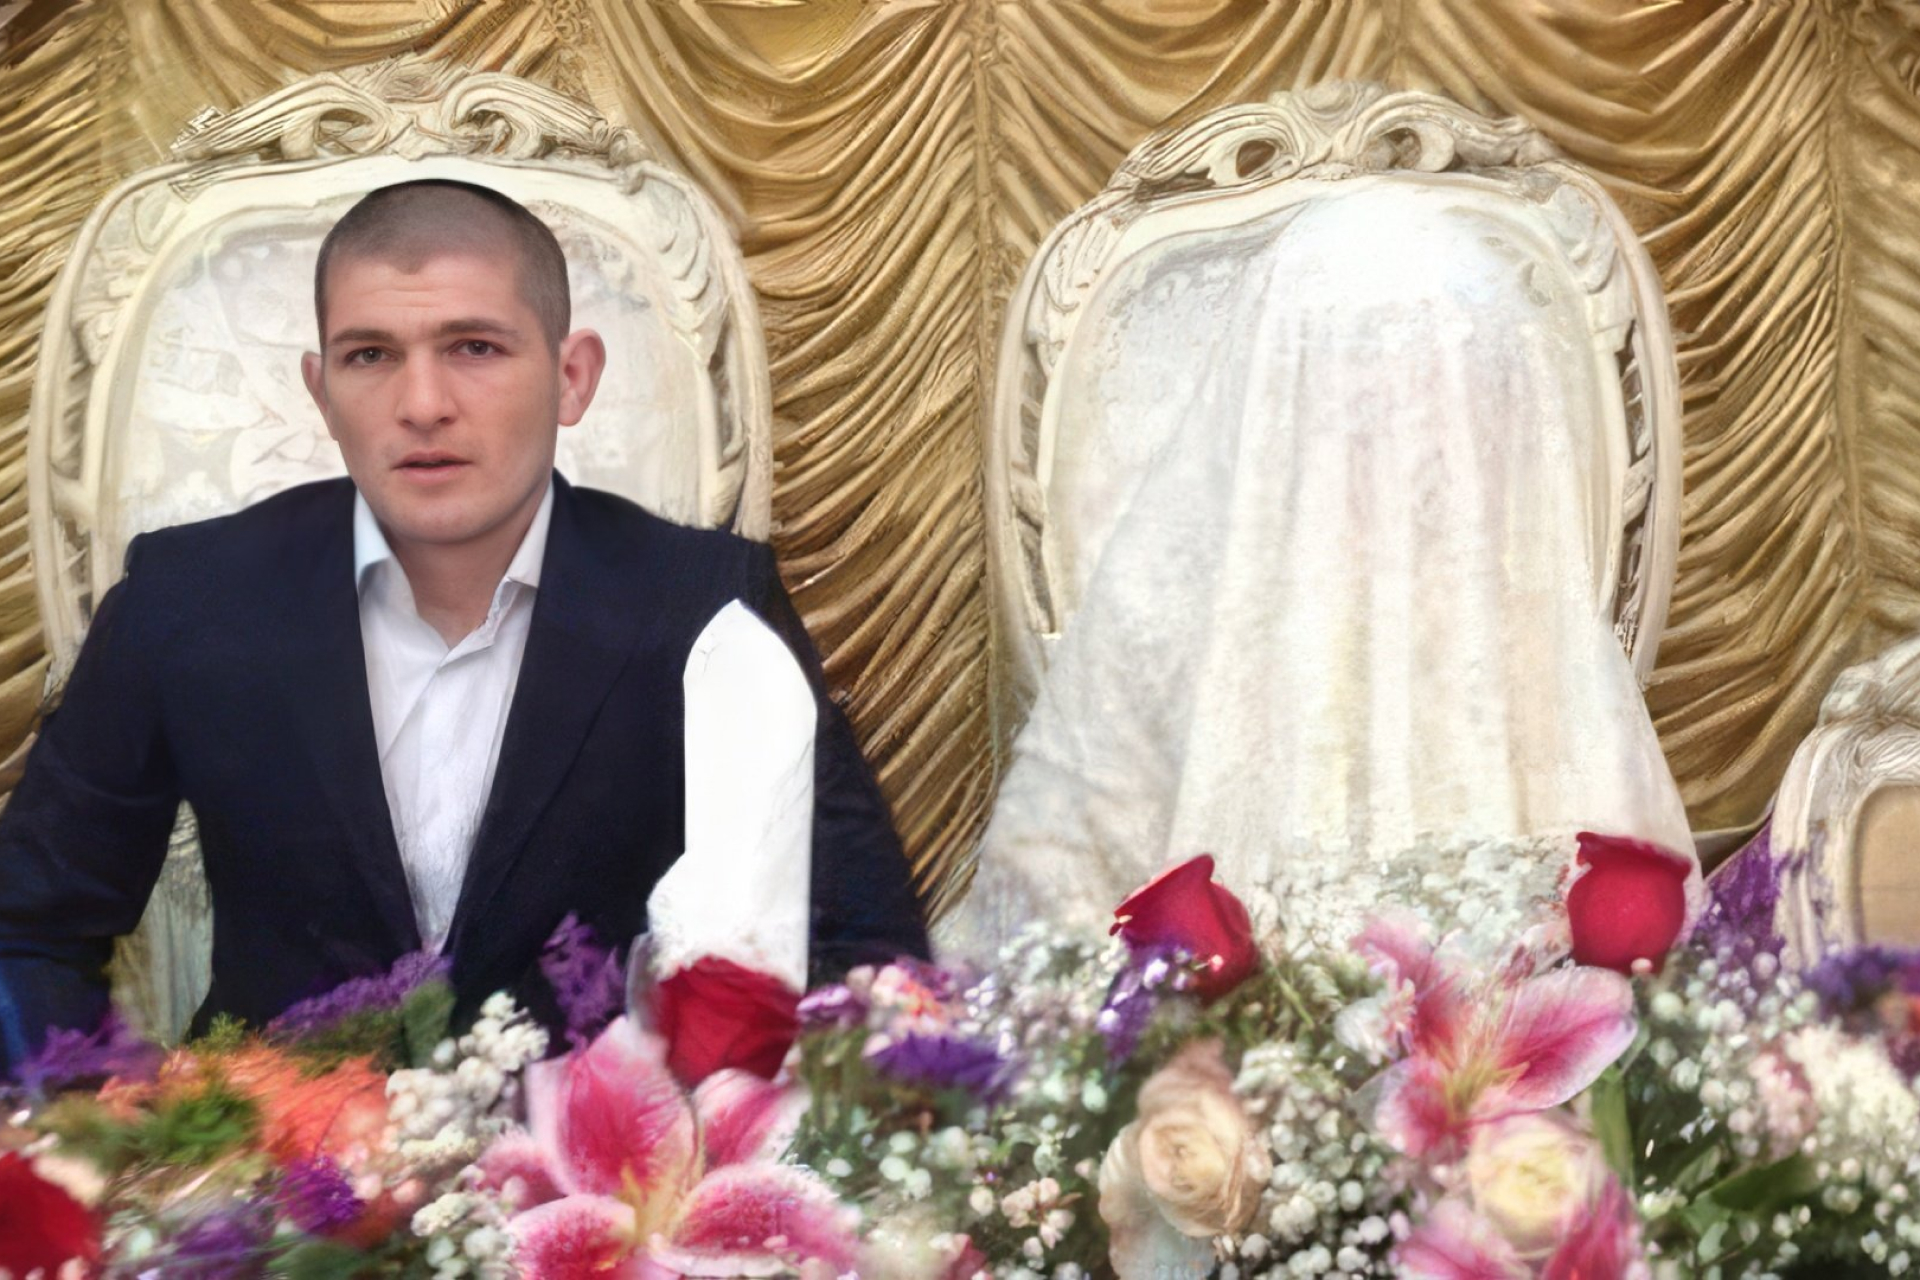 Хабиб Нурмагомедов с женой на свадьбе